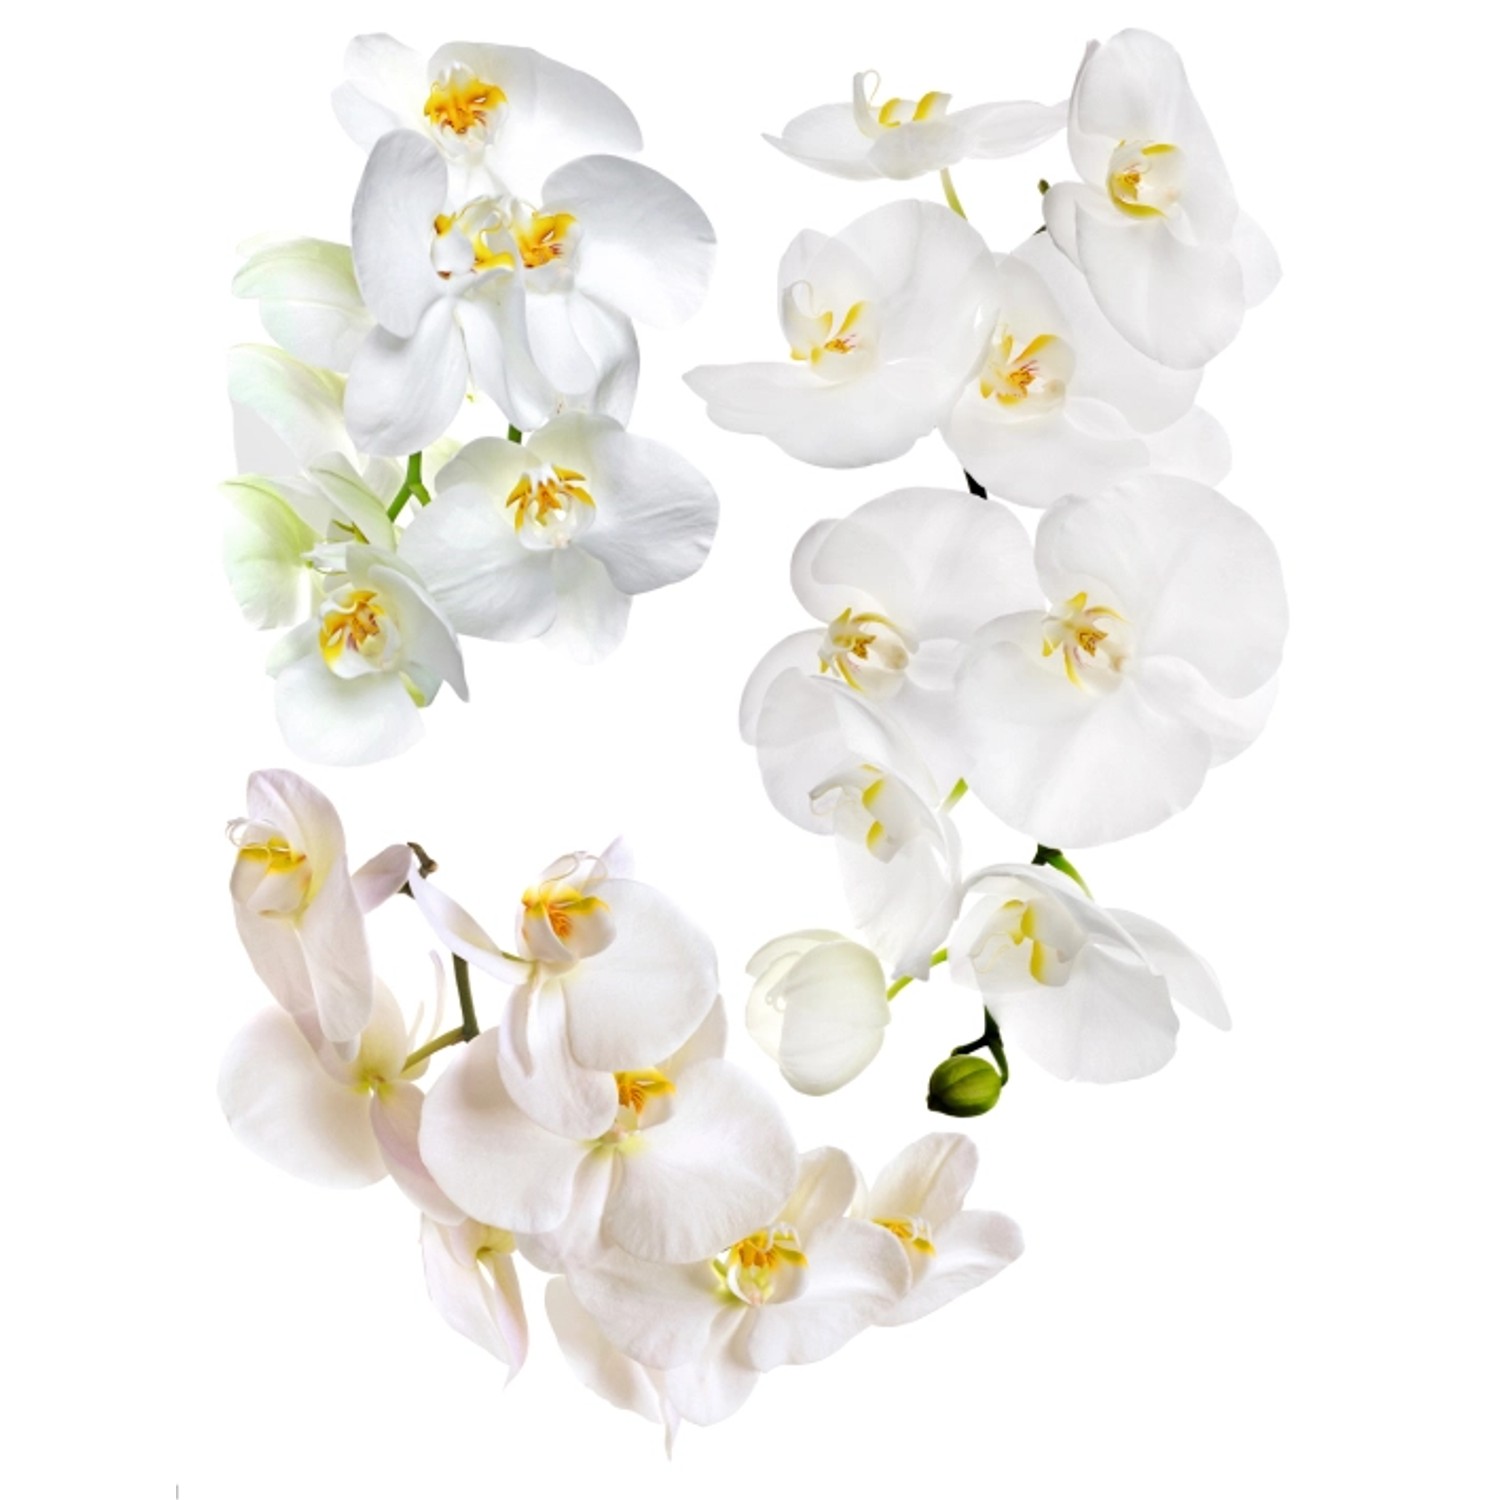 Sanders & Sanders Wandtattoo Blumen Weiß 65 x 85 cm 600283 günstig online kaufen